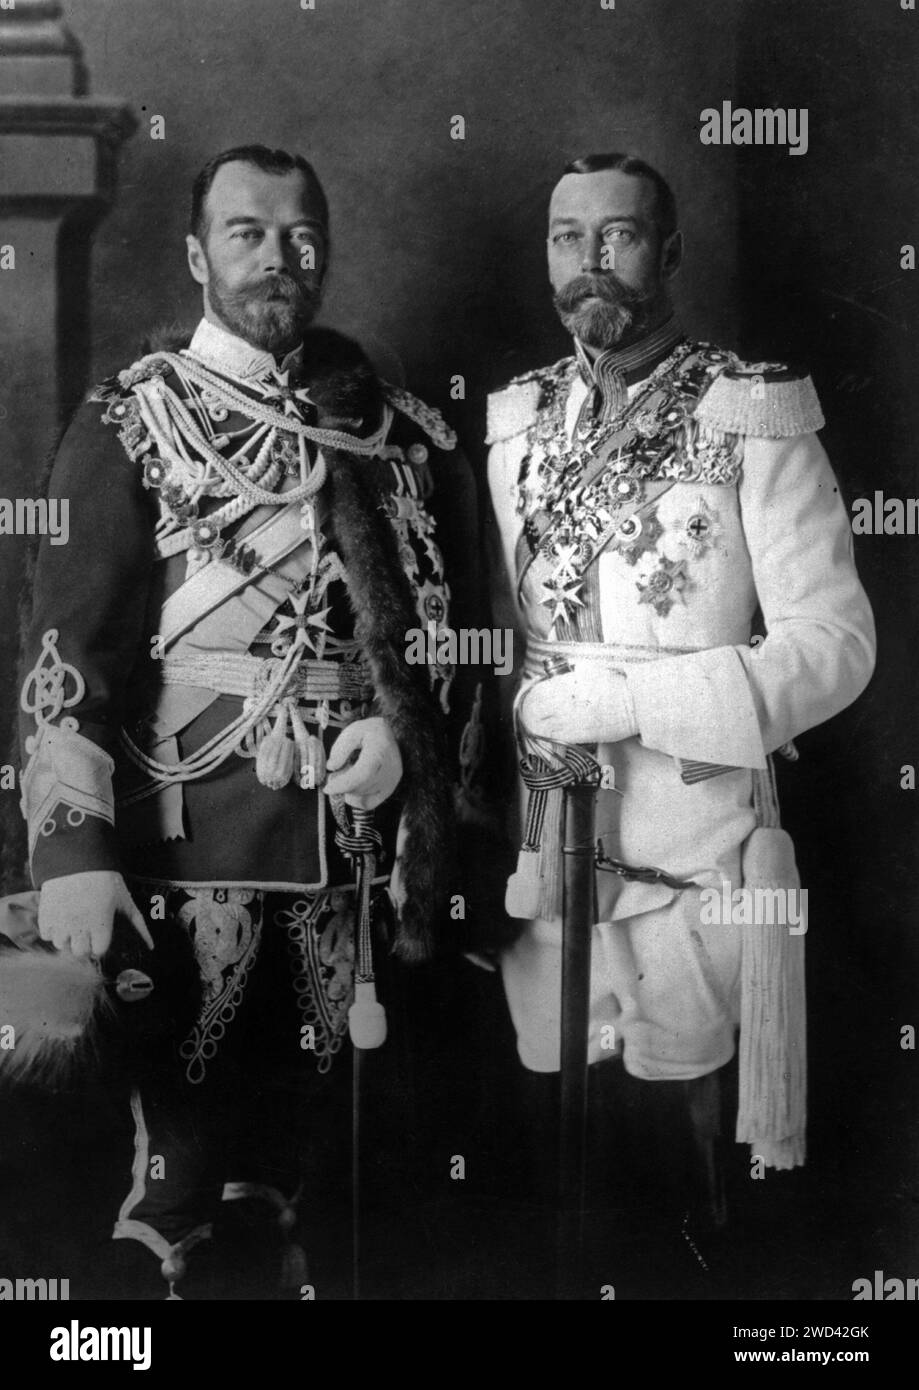 BERLÍN, ALEMANIA - 24 de mayo de 1913 - Retrato formal del zar Nicolás II de Rusia ( 1868 - 1918 ), a la izquierda, con el rey Jorge V de Inglaterra ( 1865 - 1936 ), ri Foto de stock